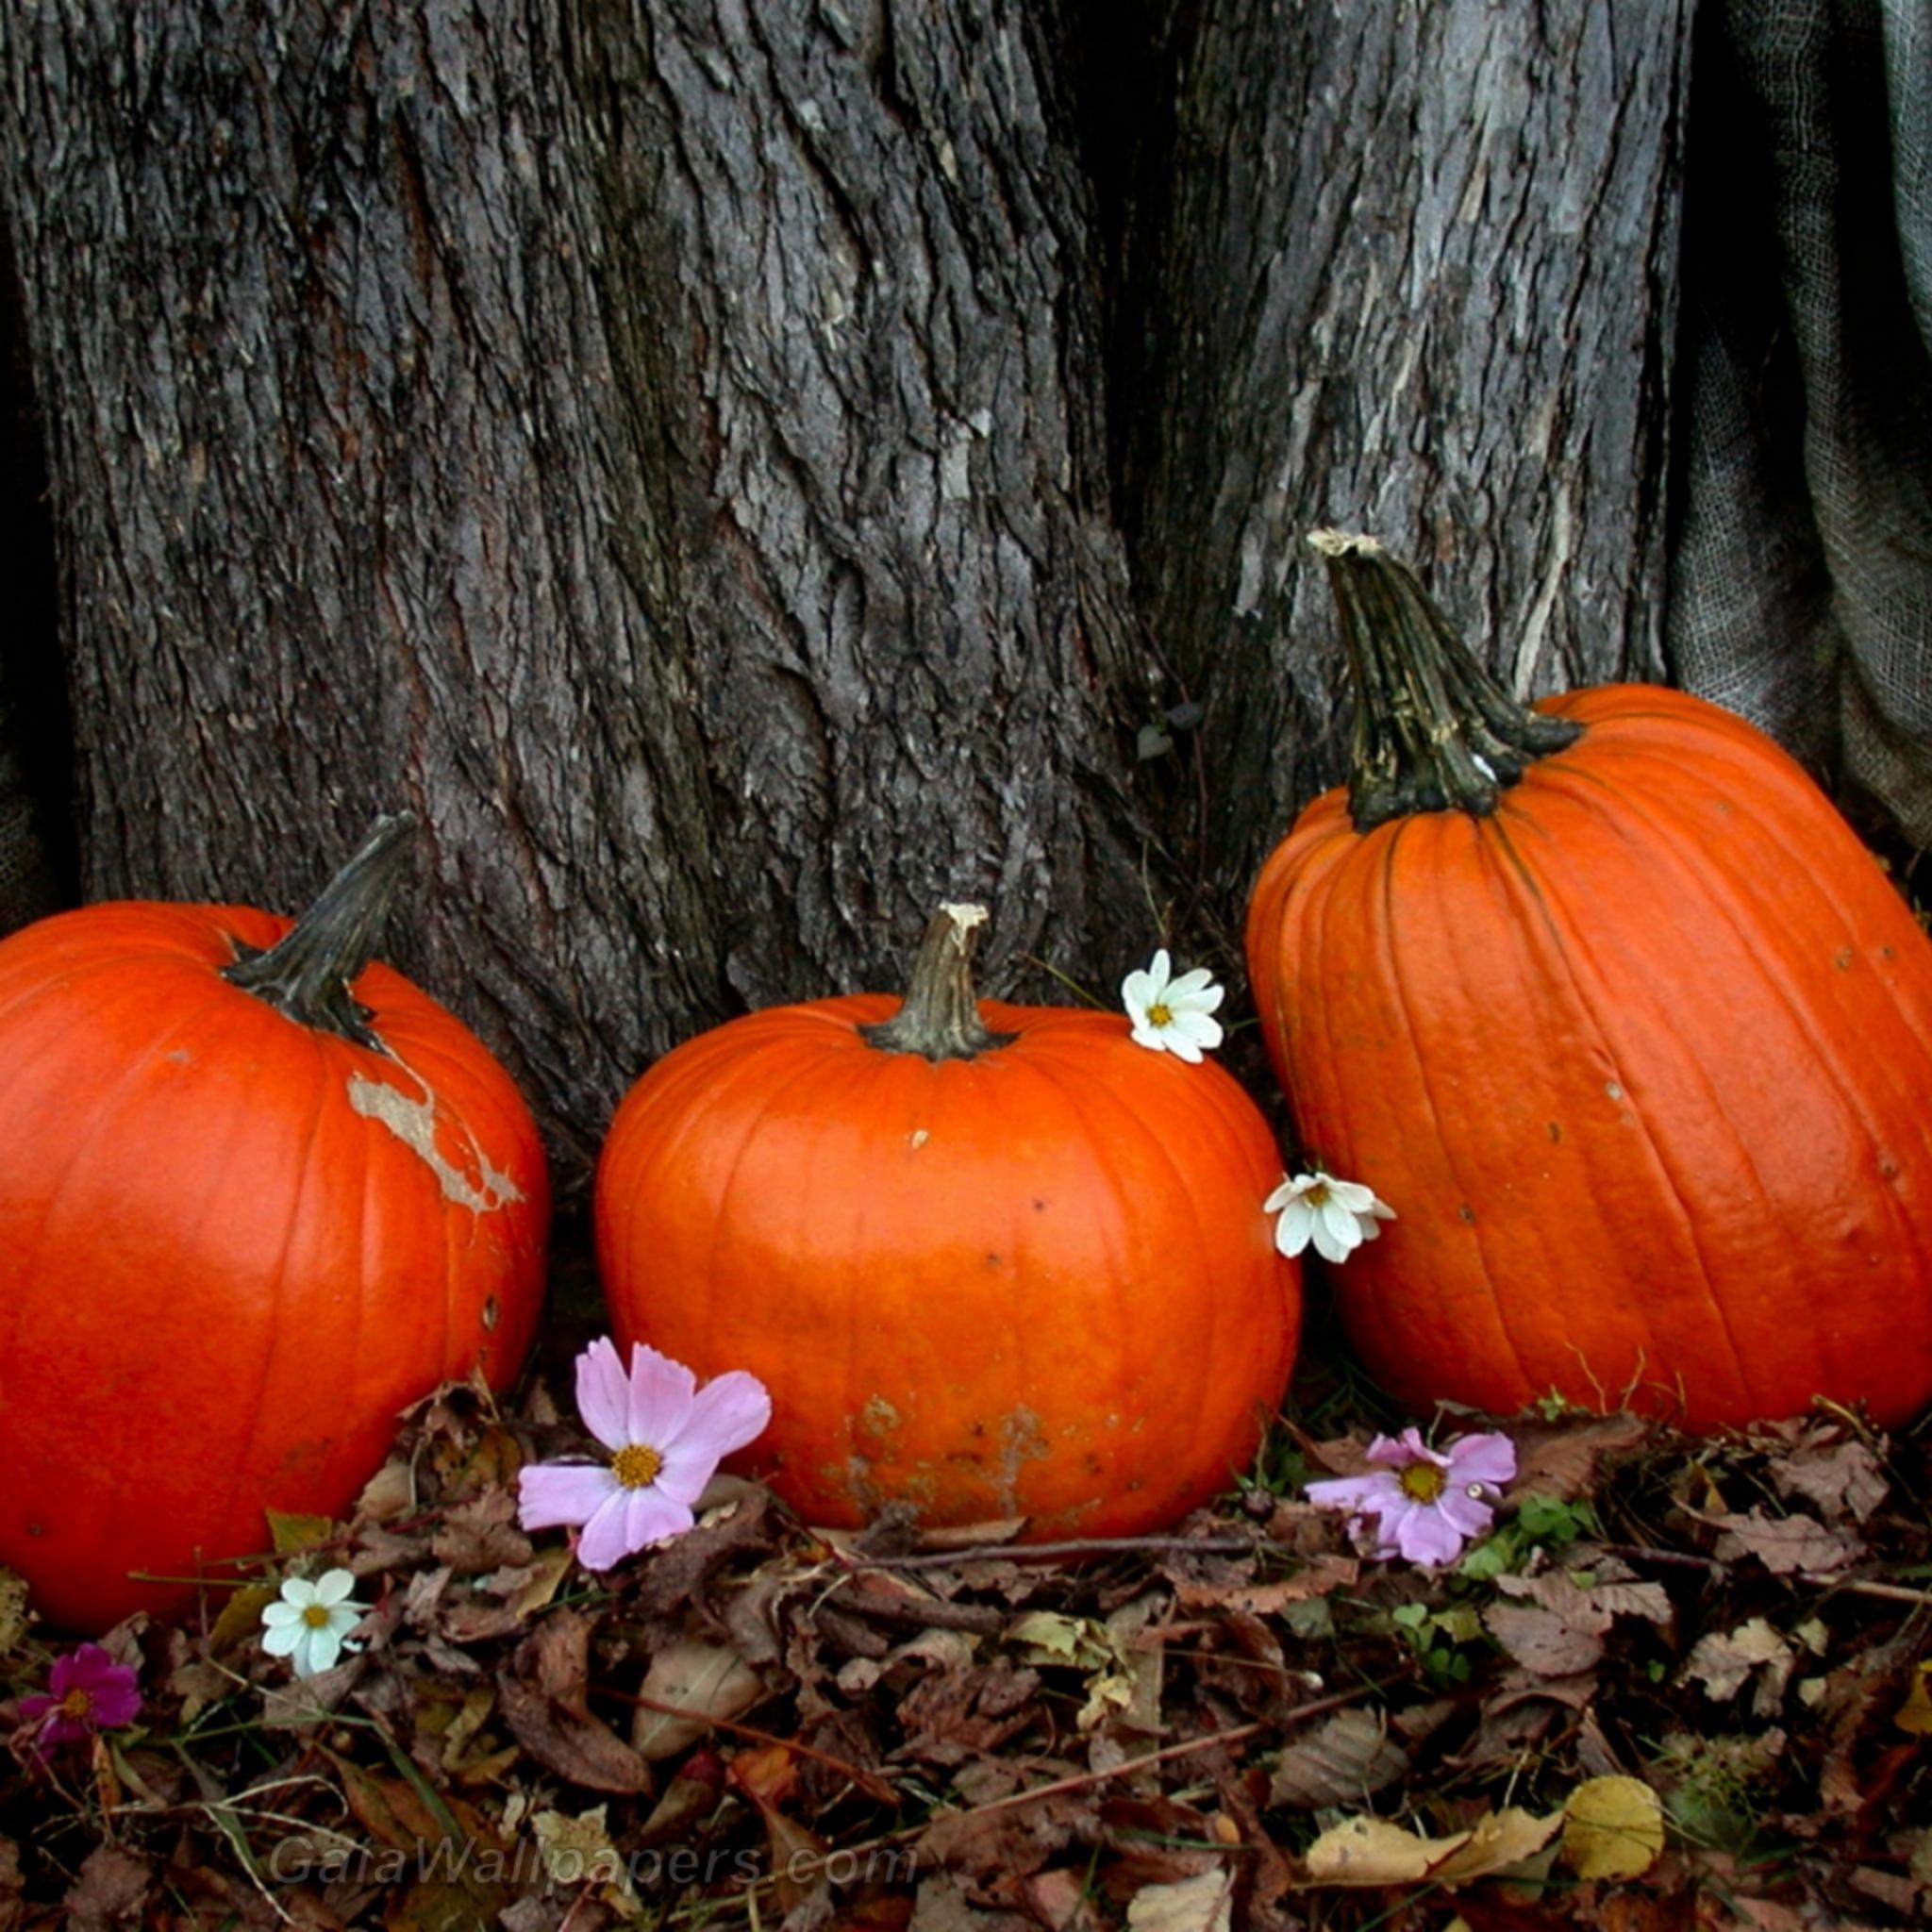 Pumpkins in autumn - Free desktop wallpapers